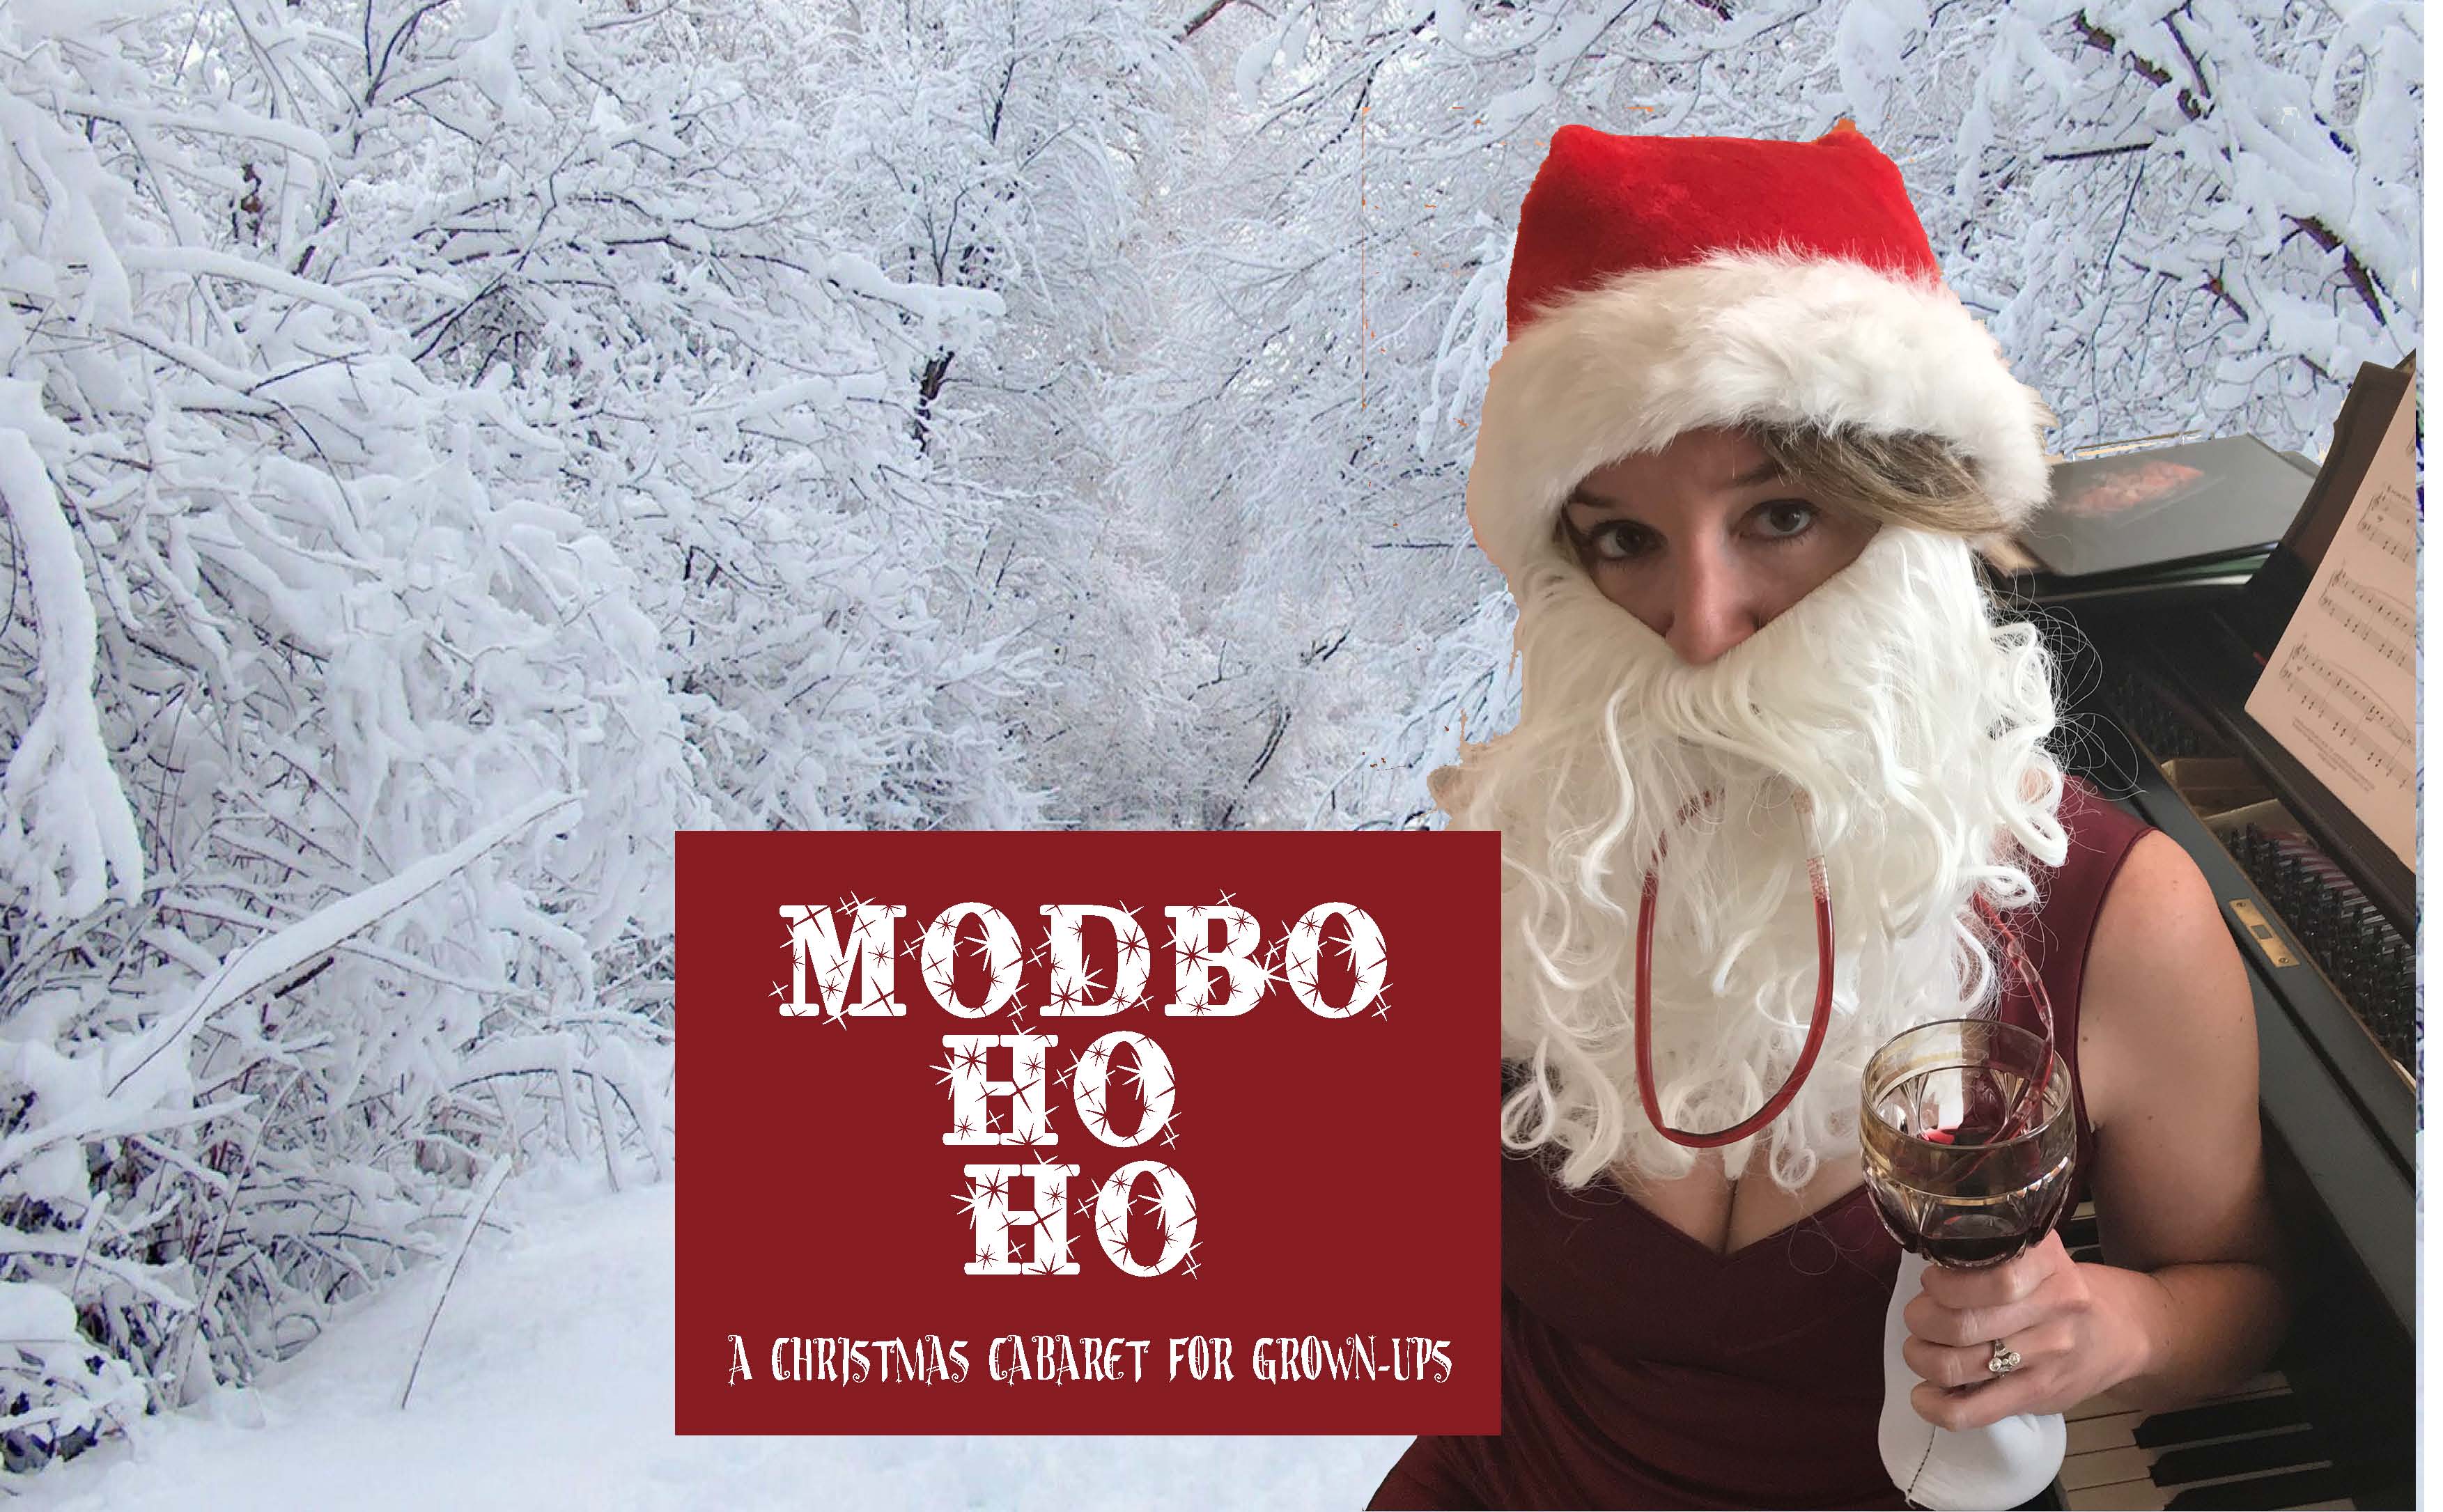 The Modbo Ho Ho 2017: A Christmas Cabaret for Grown-Ups